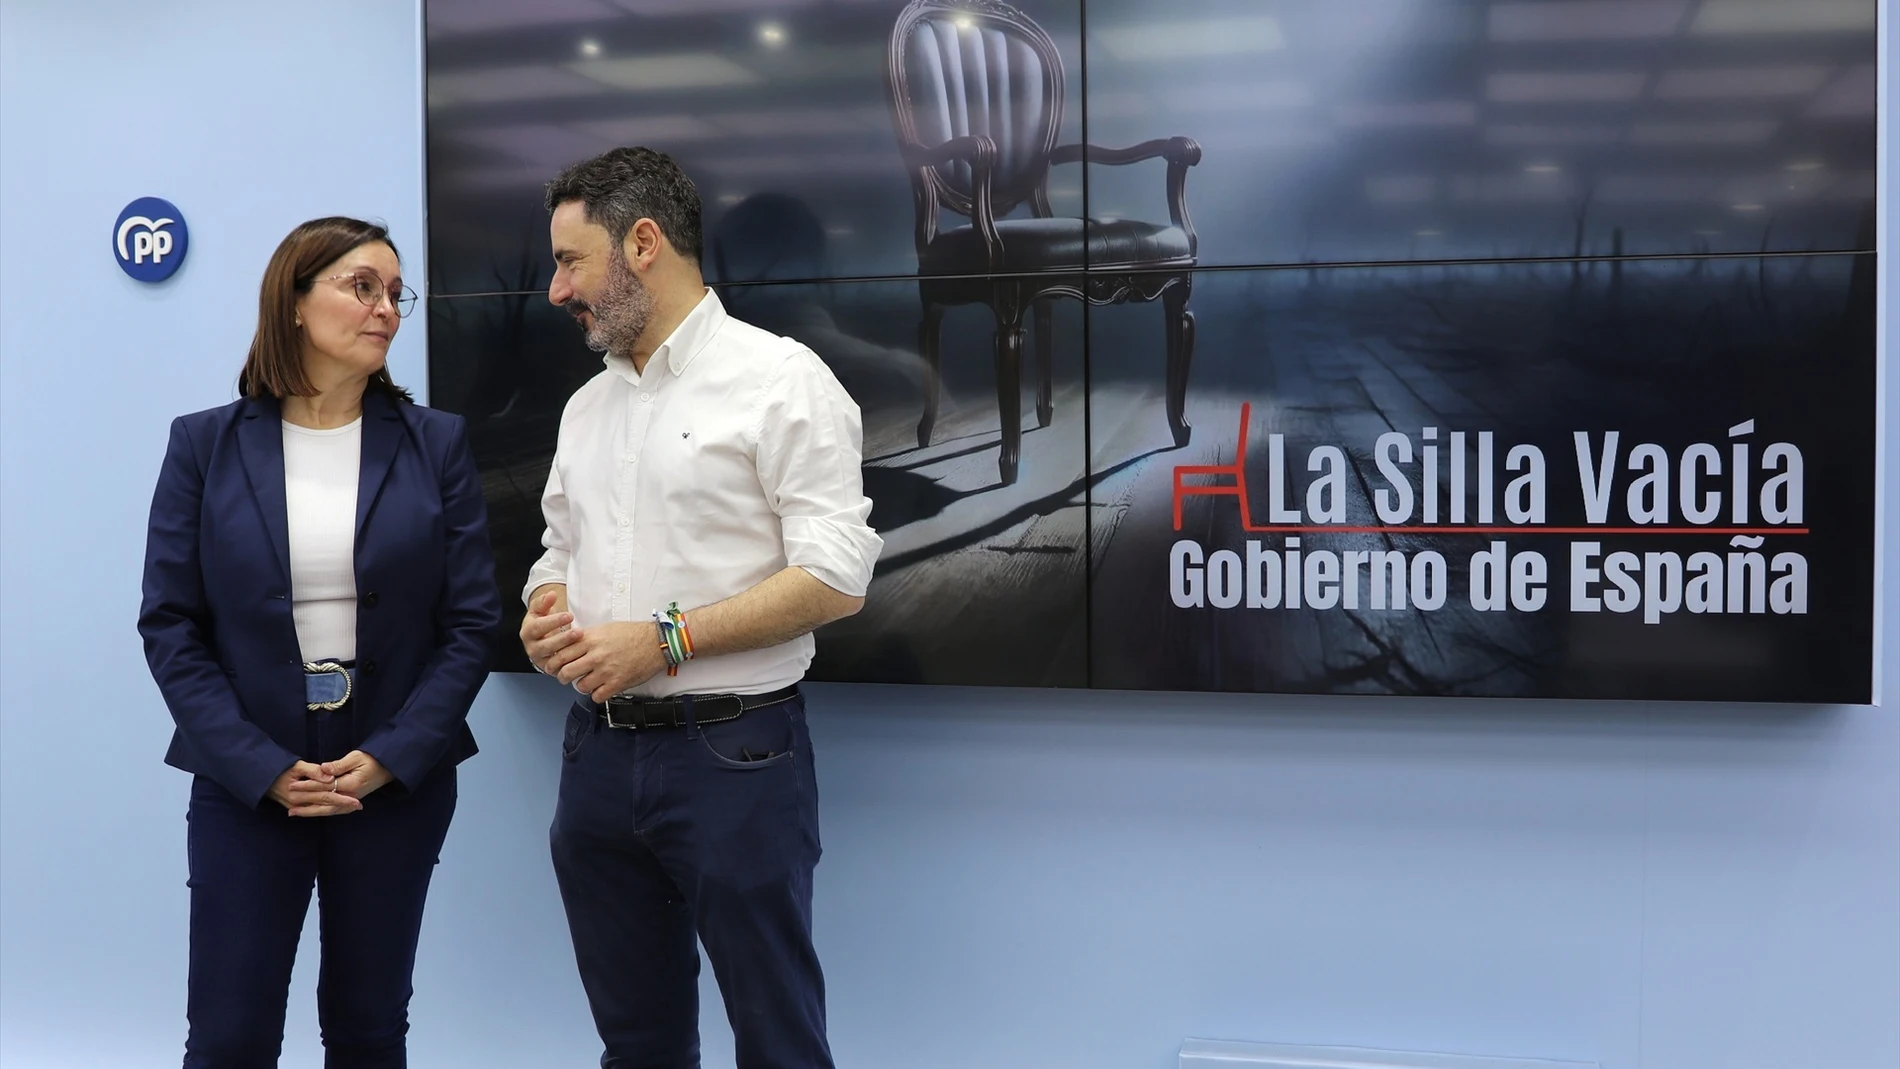 "La silla vacía": la campaña del PP que denuncia la dejadez de Pedro Sánchez con Málaga